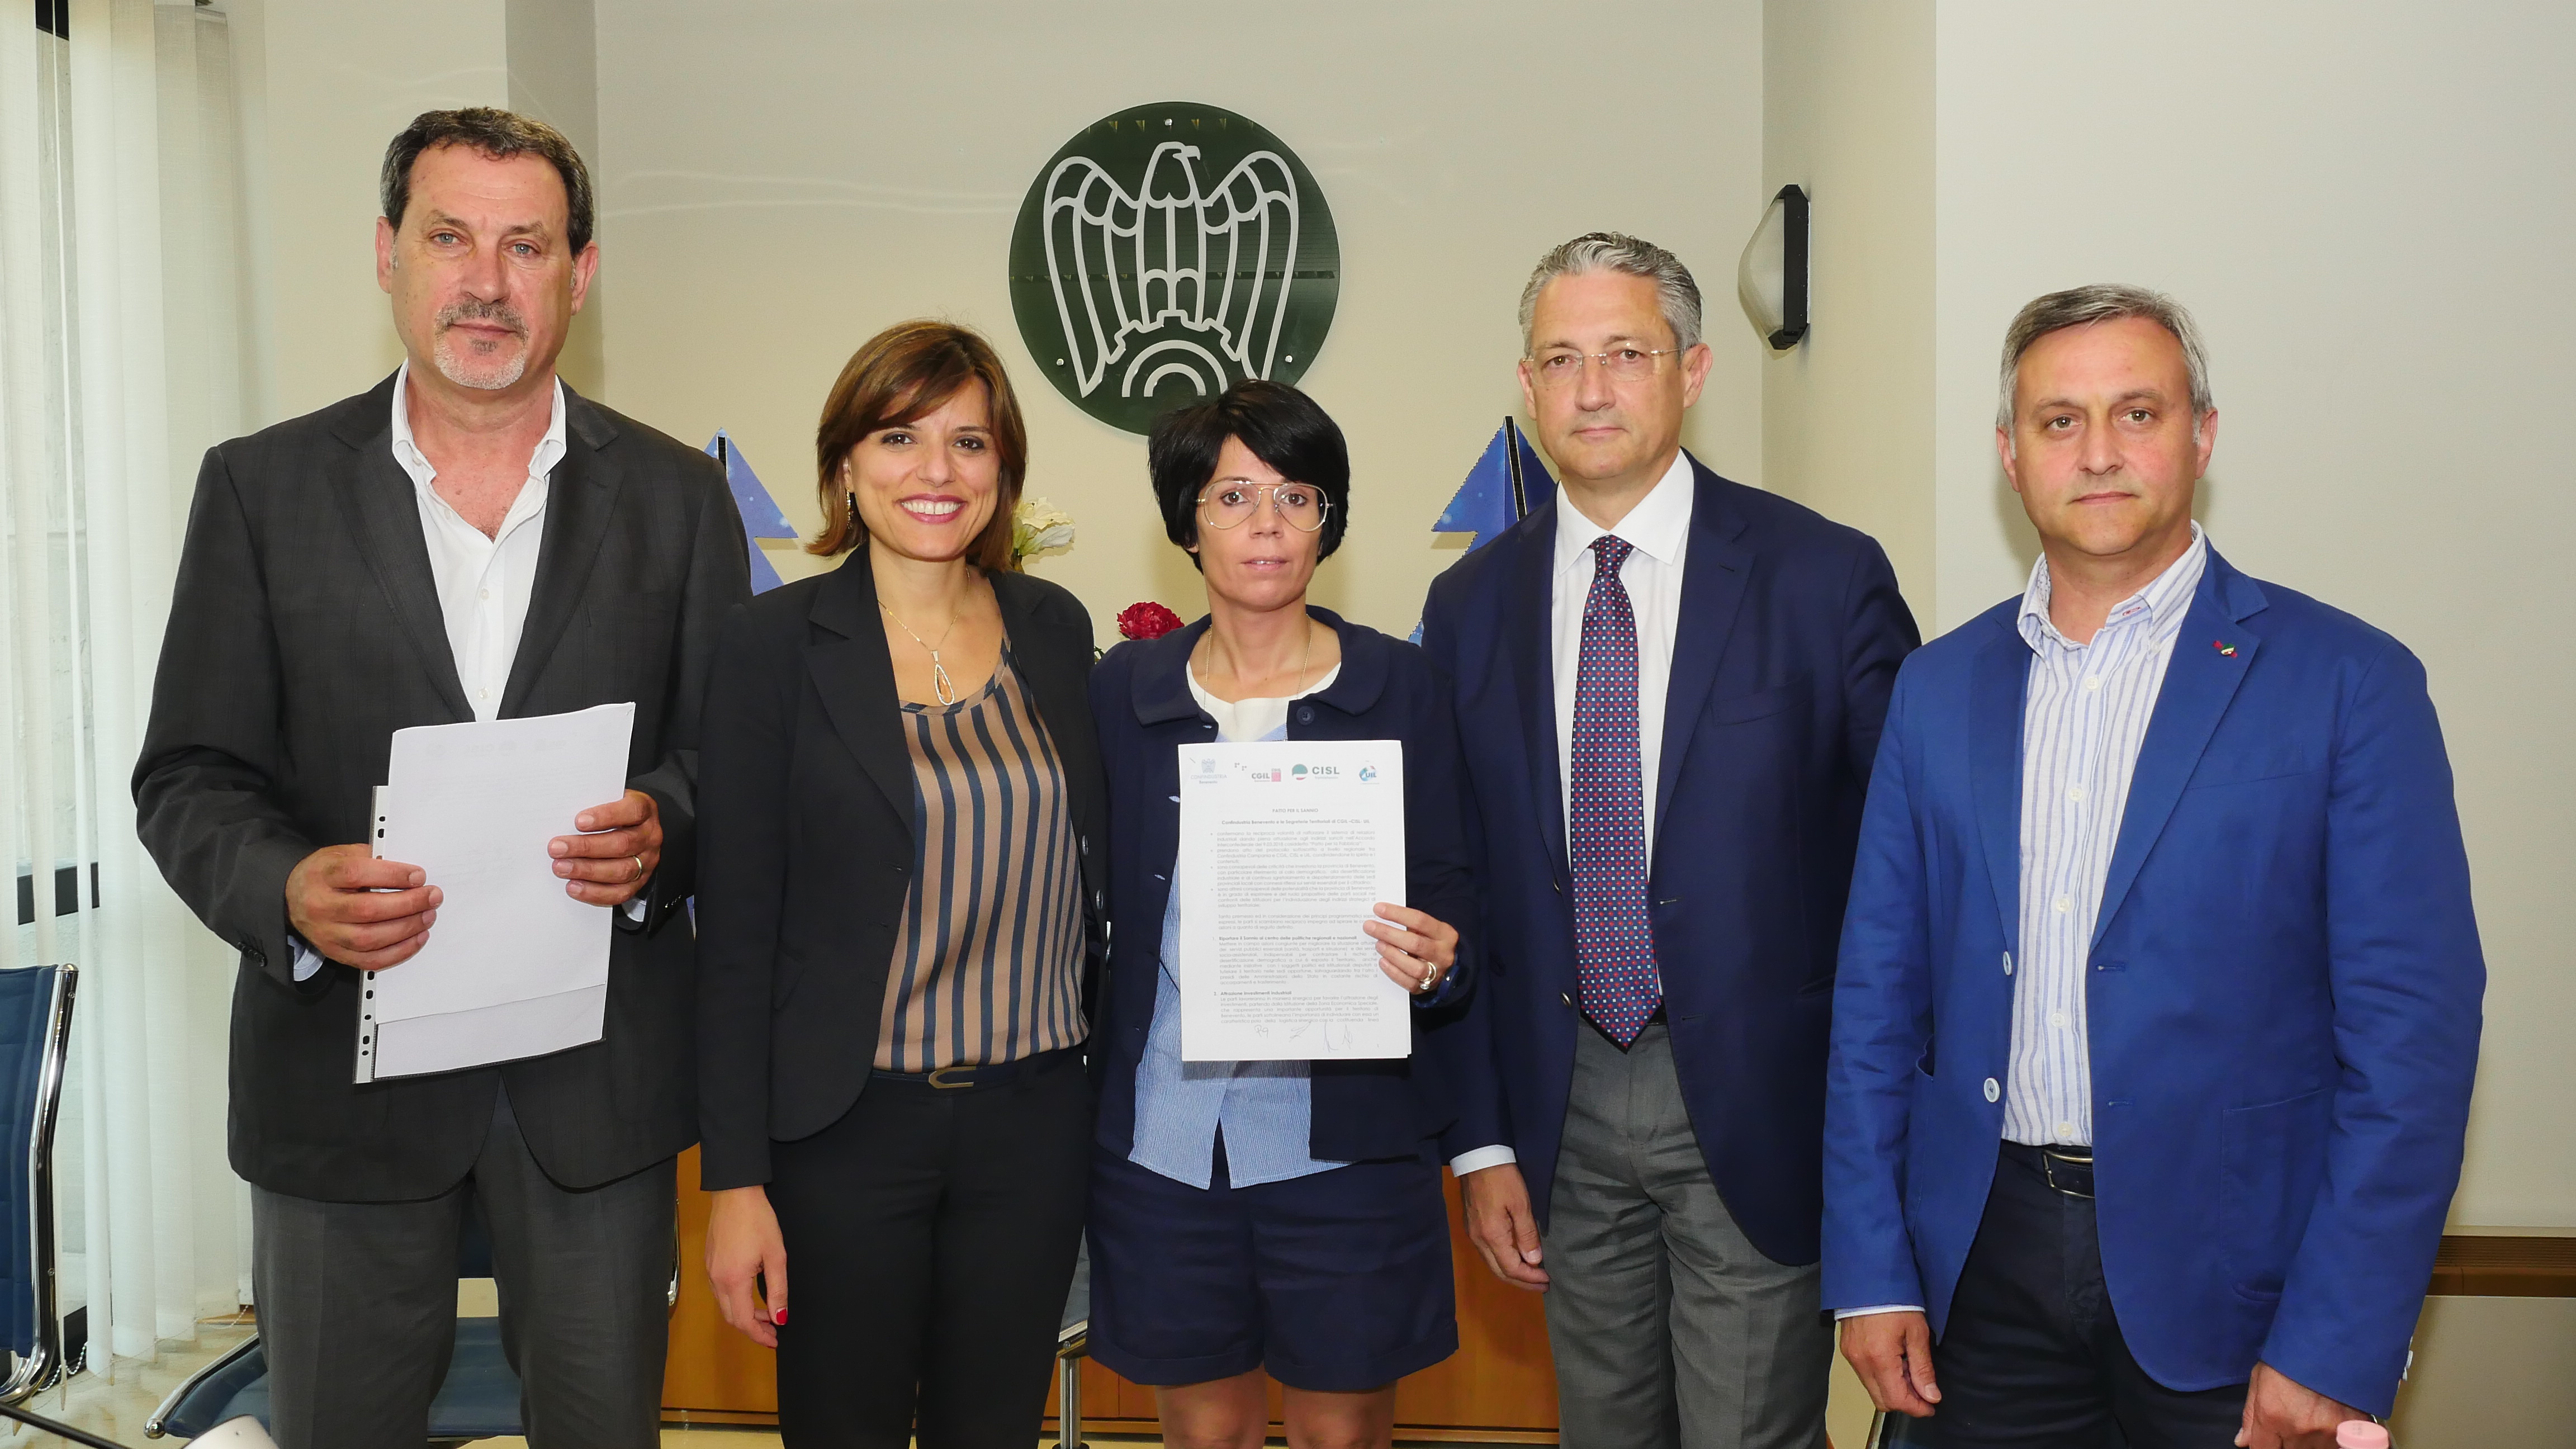 Benevento| Confindustria, firmato accordo i sindacati